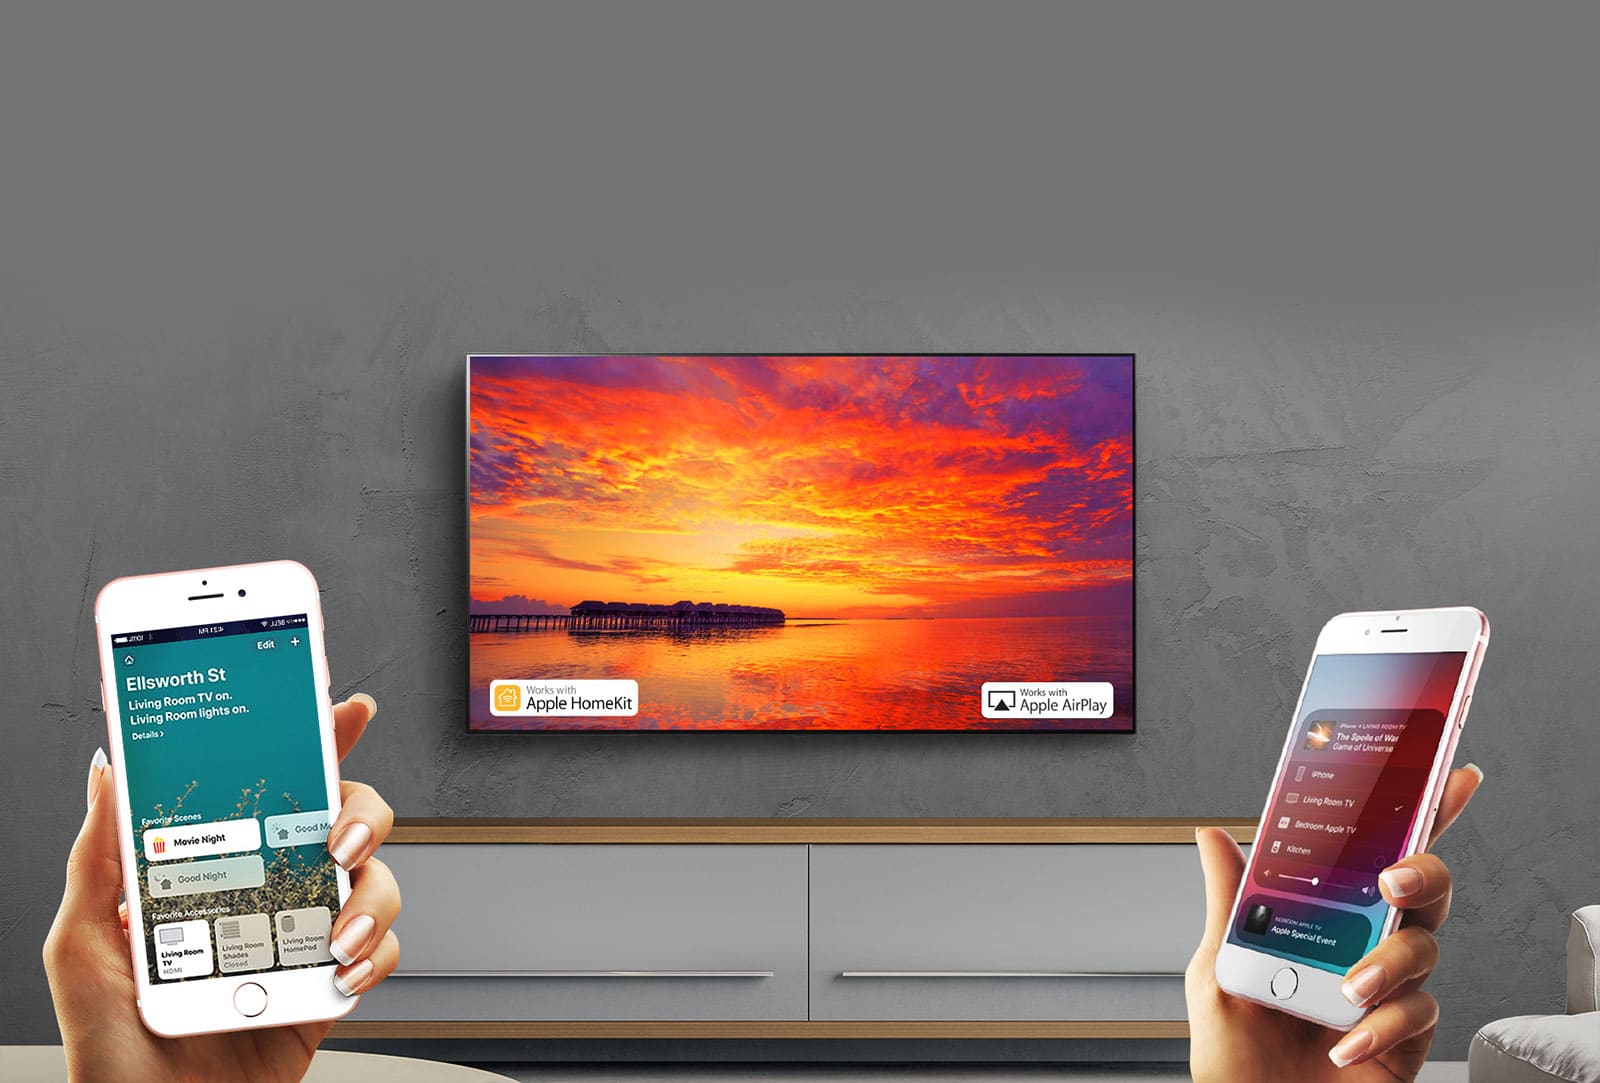 LG uuendab oma 2018. aasta telereid AirPlay 2 ja HomeKiti toega hiljem sel aastal